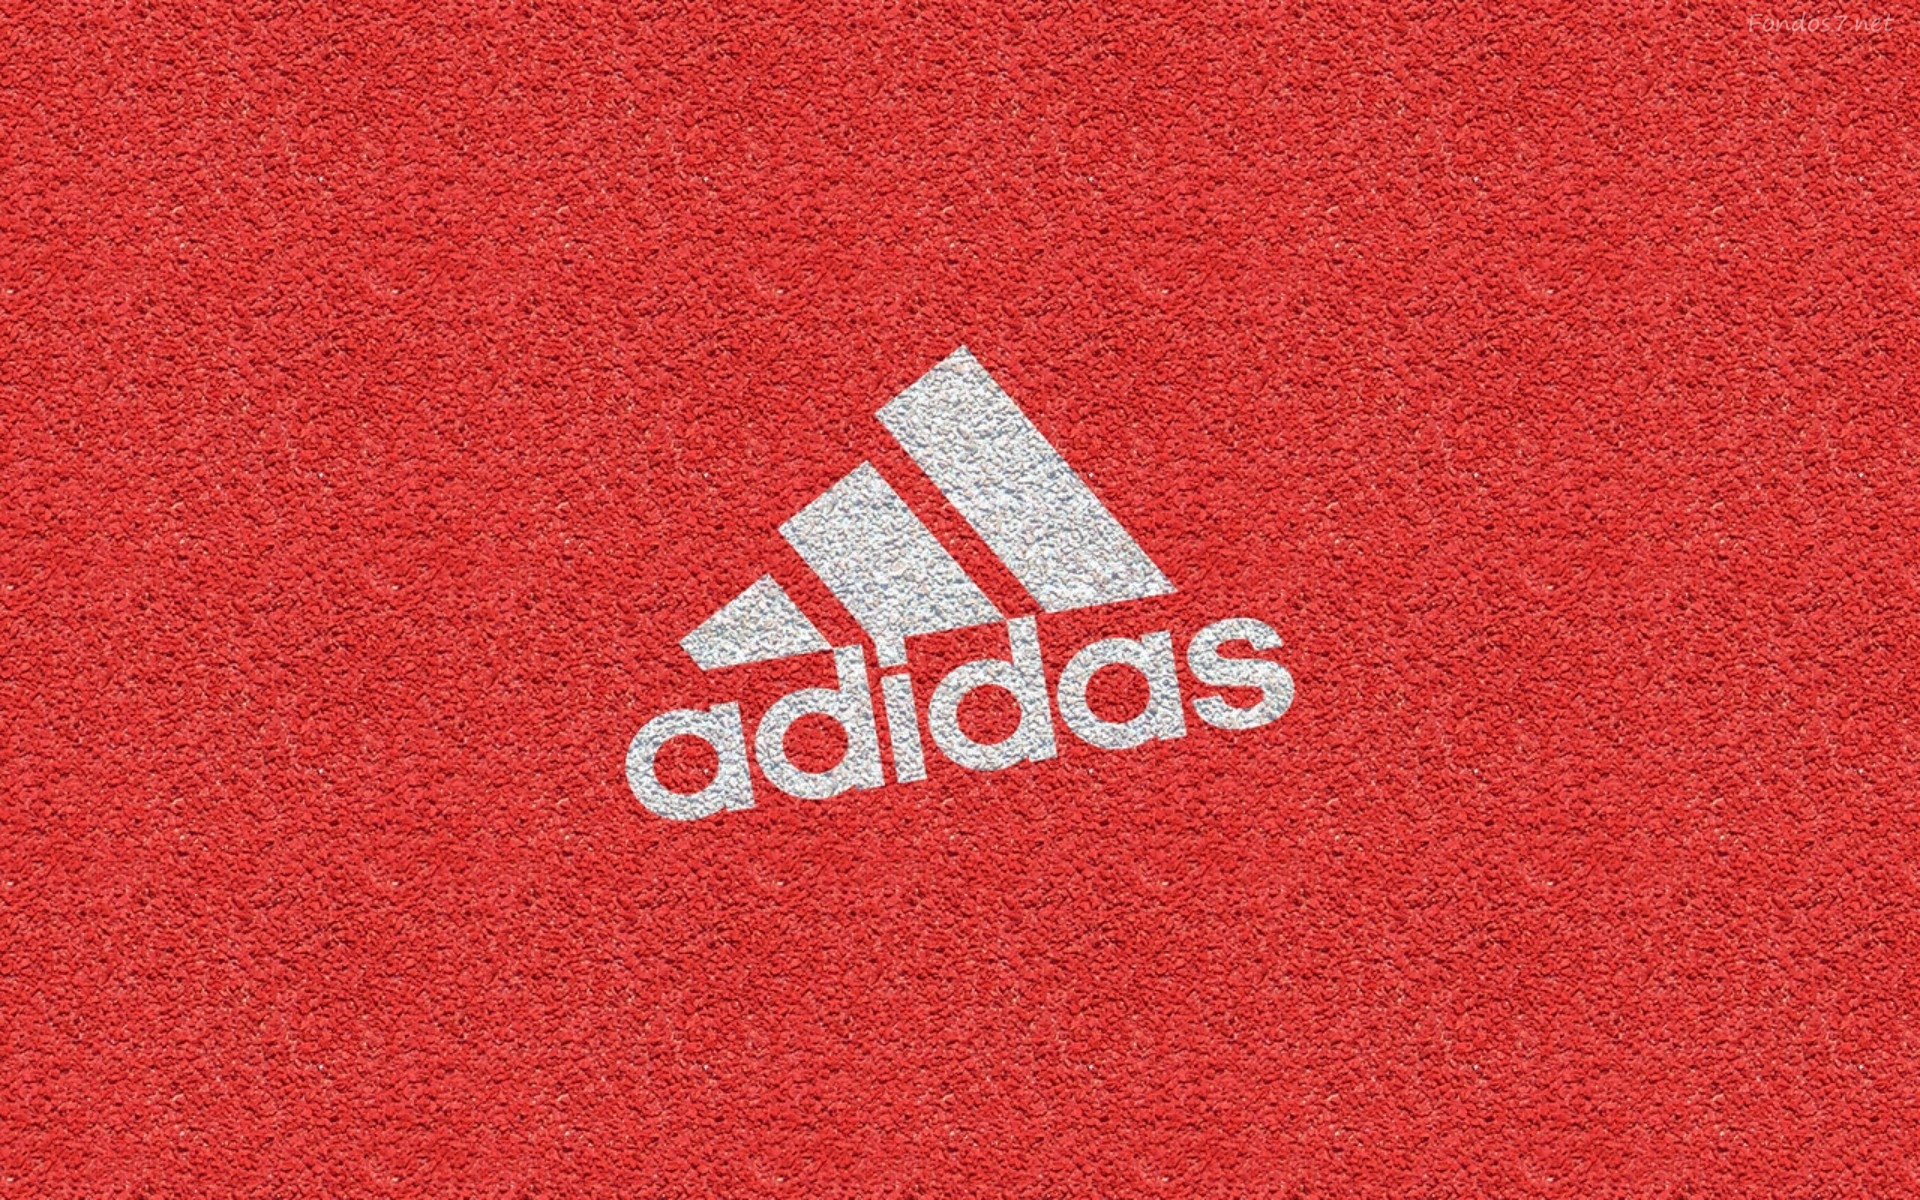 Adidas Fondo Original Wallpaper